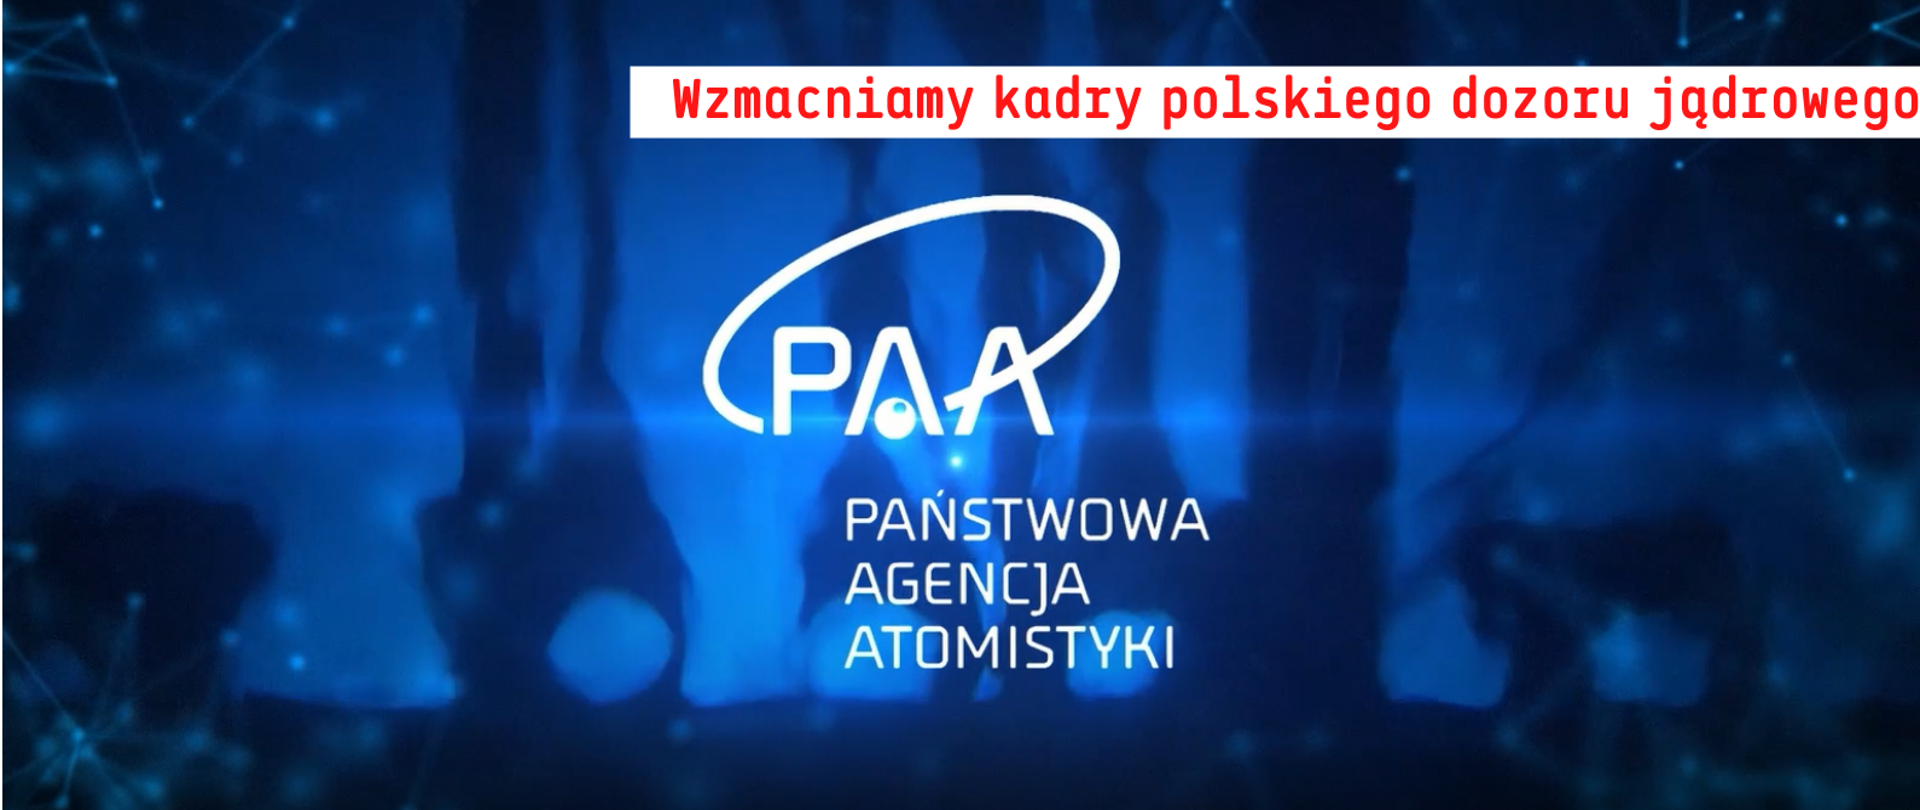 Promieniowanie Czerenkowa w reaktorze. Na jego tle biały logotyp PAA oraz napis "wzmacniamy kadry polskiego dozoru jądrowego"